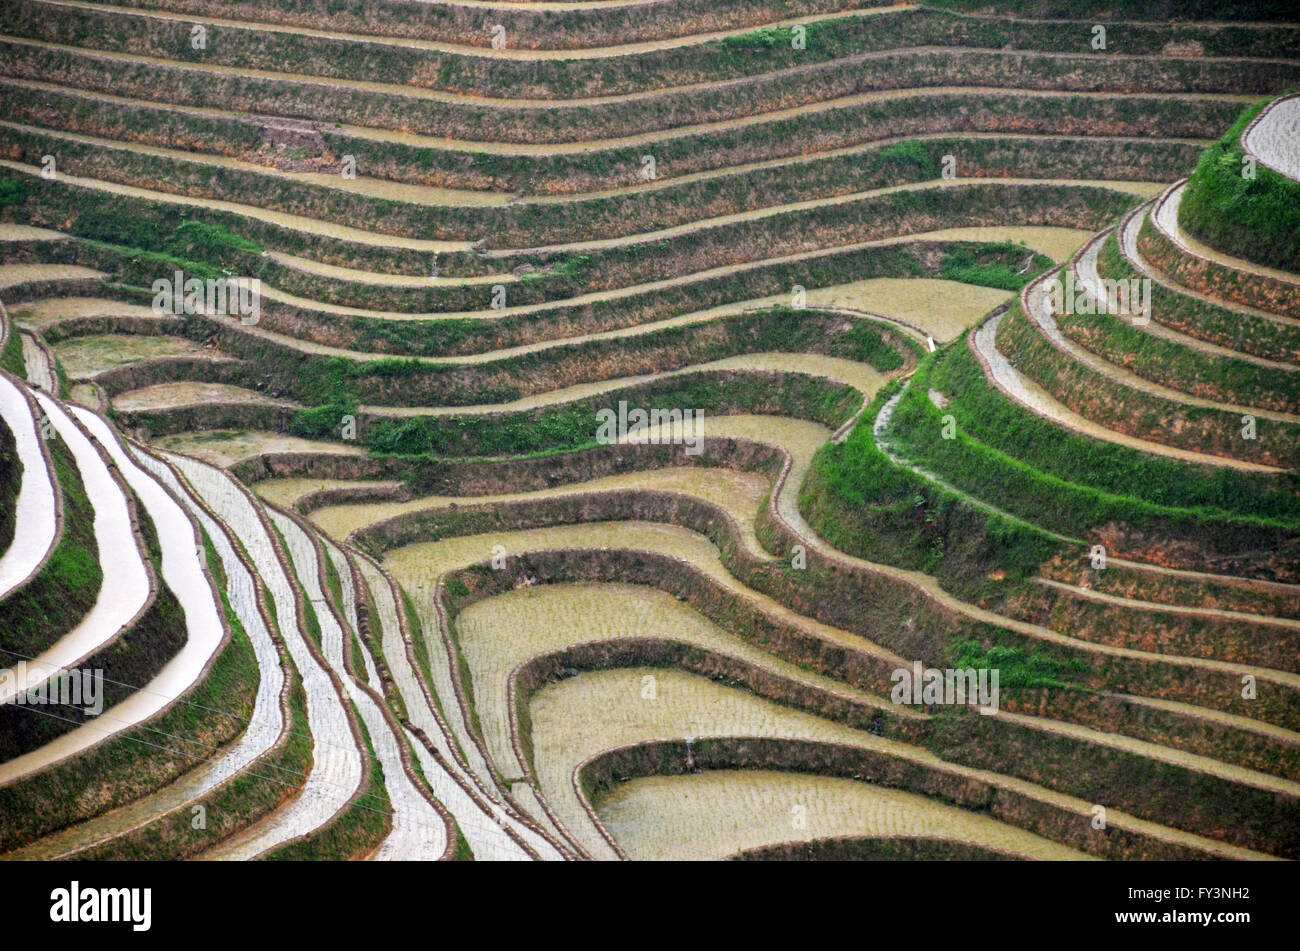 Dragon's backbone rice terraces près de Dazhai, Chine Banque D'Images